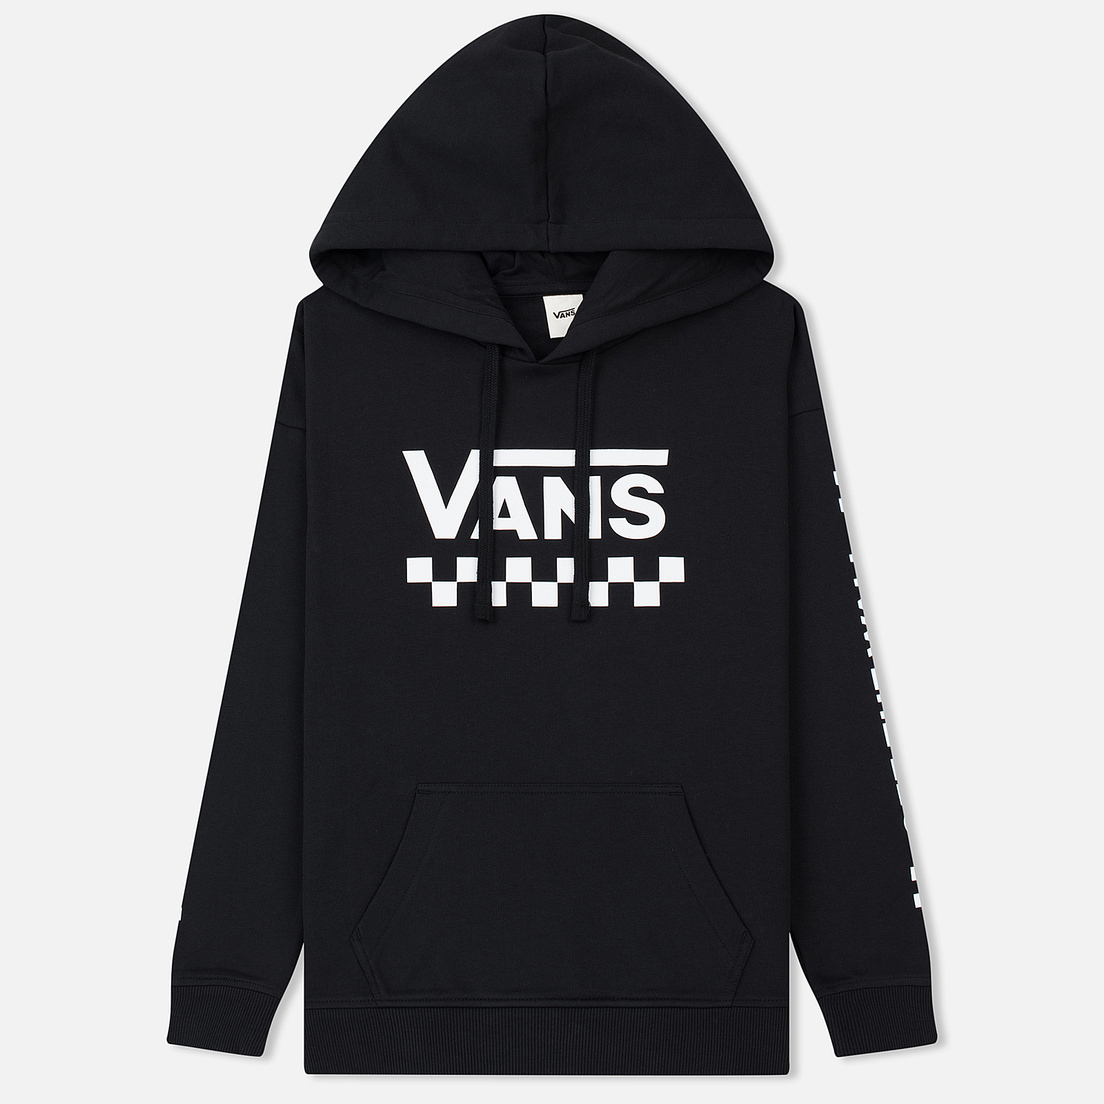 vans too much fun hoodie